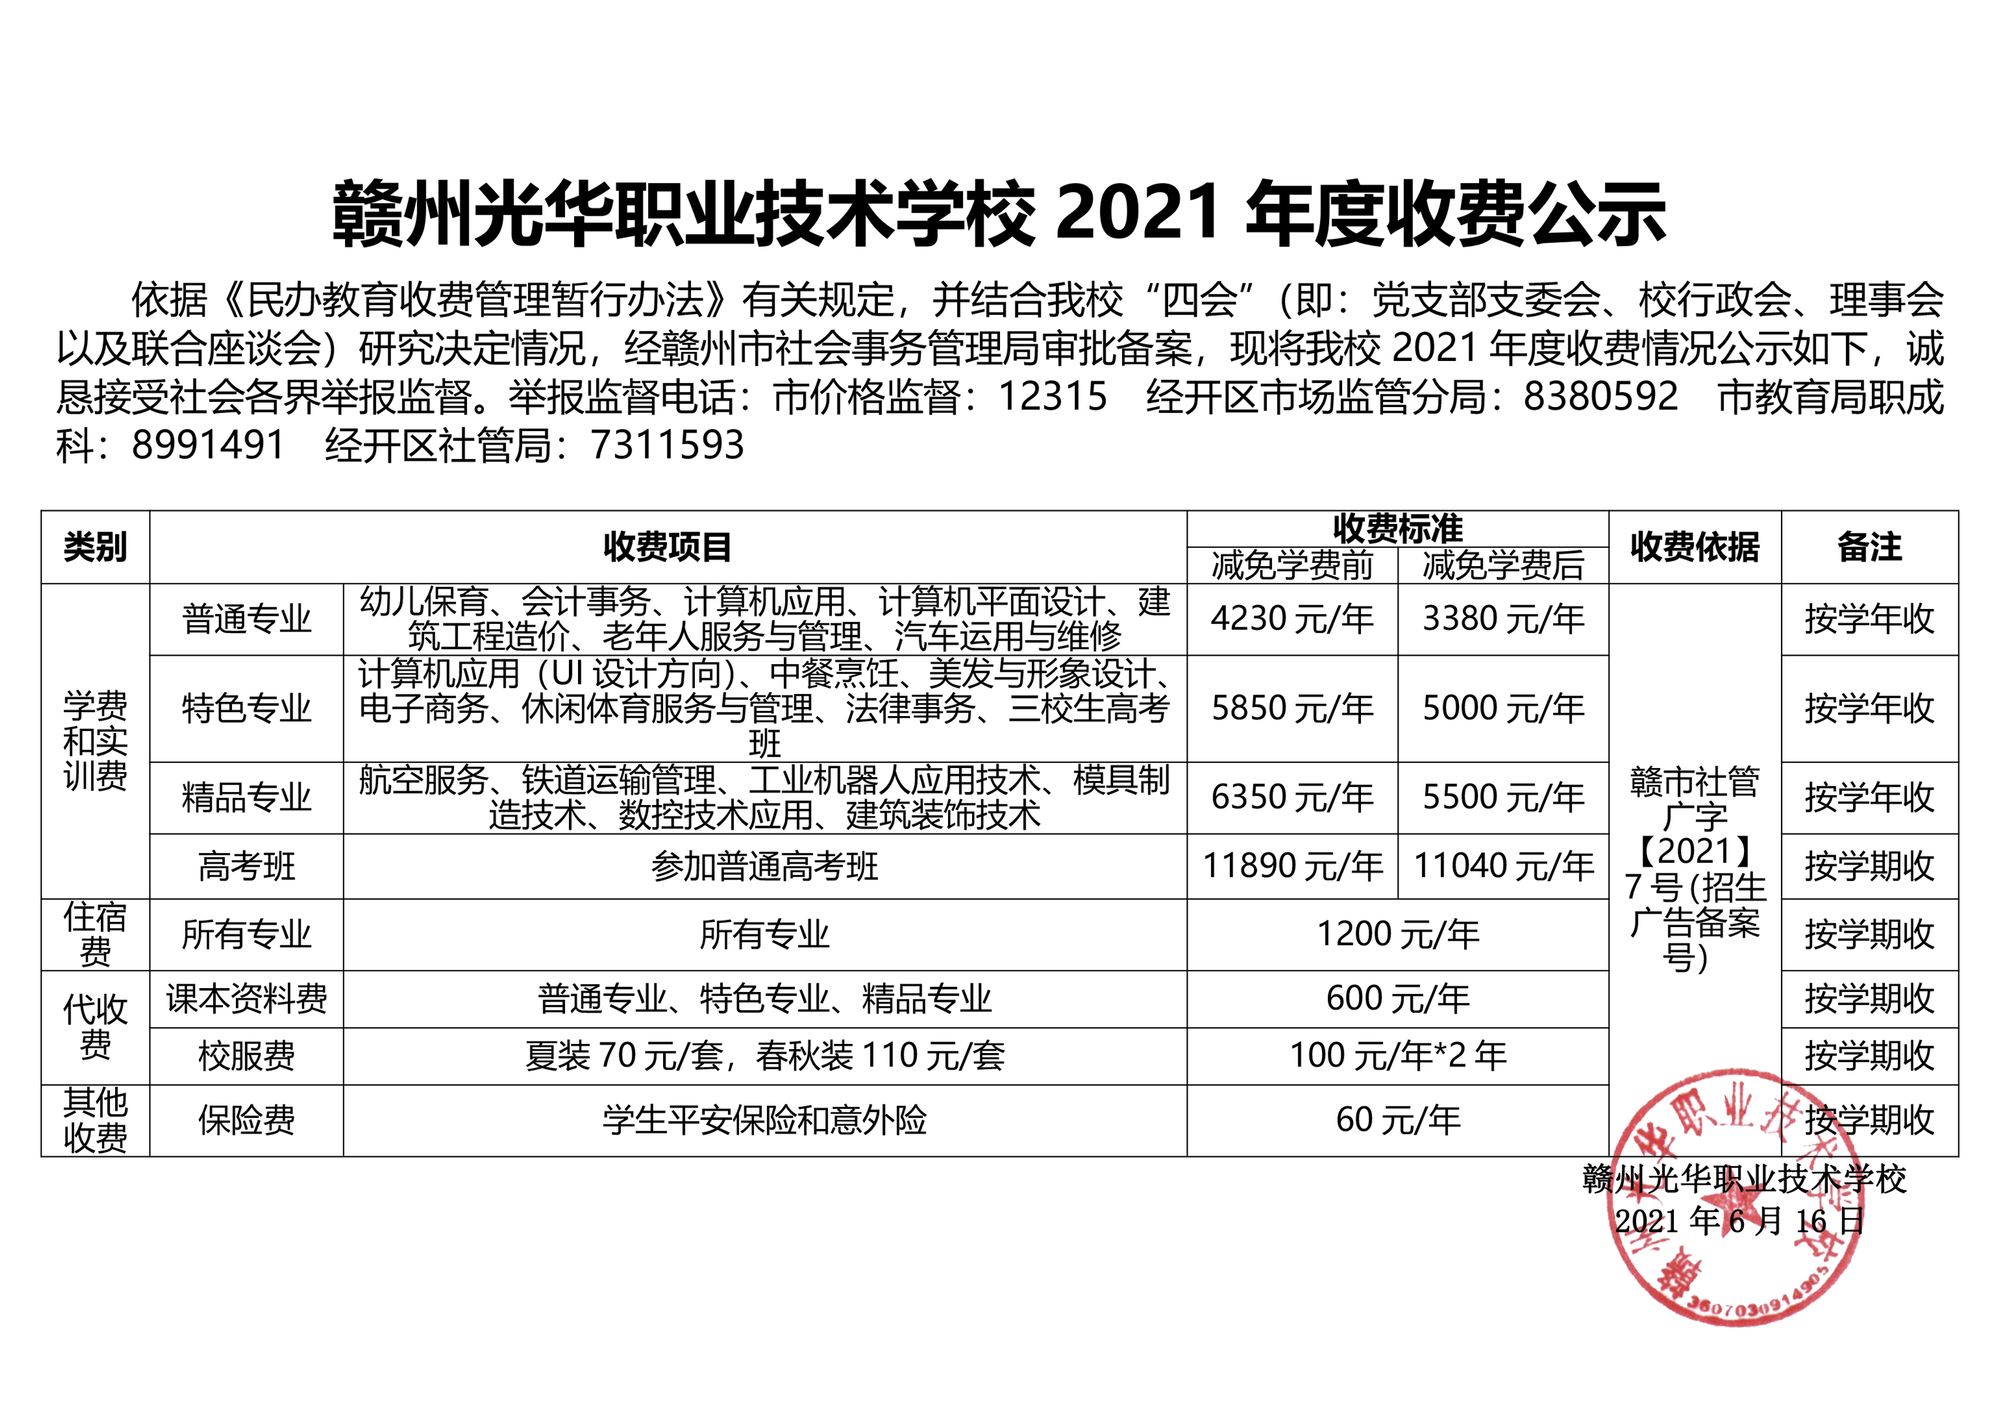 赣州光华职业技术学校2021年度收费公示.jpg